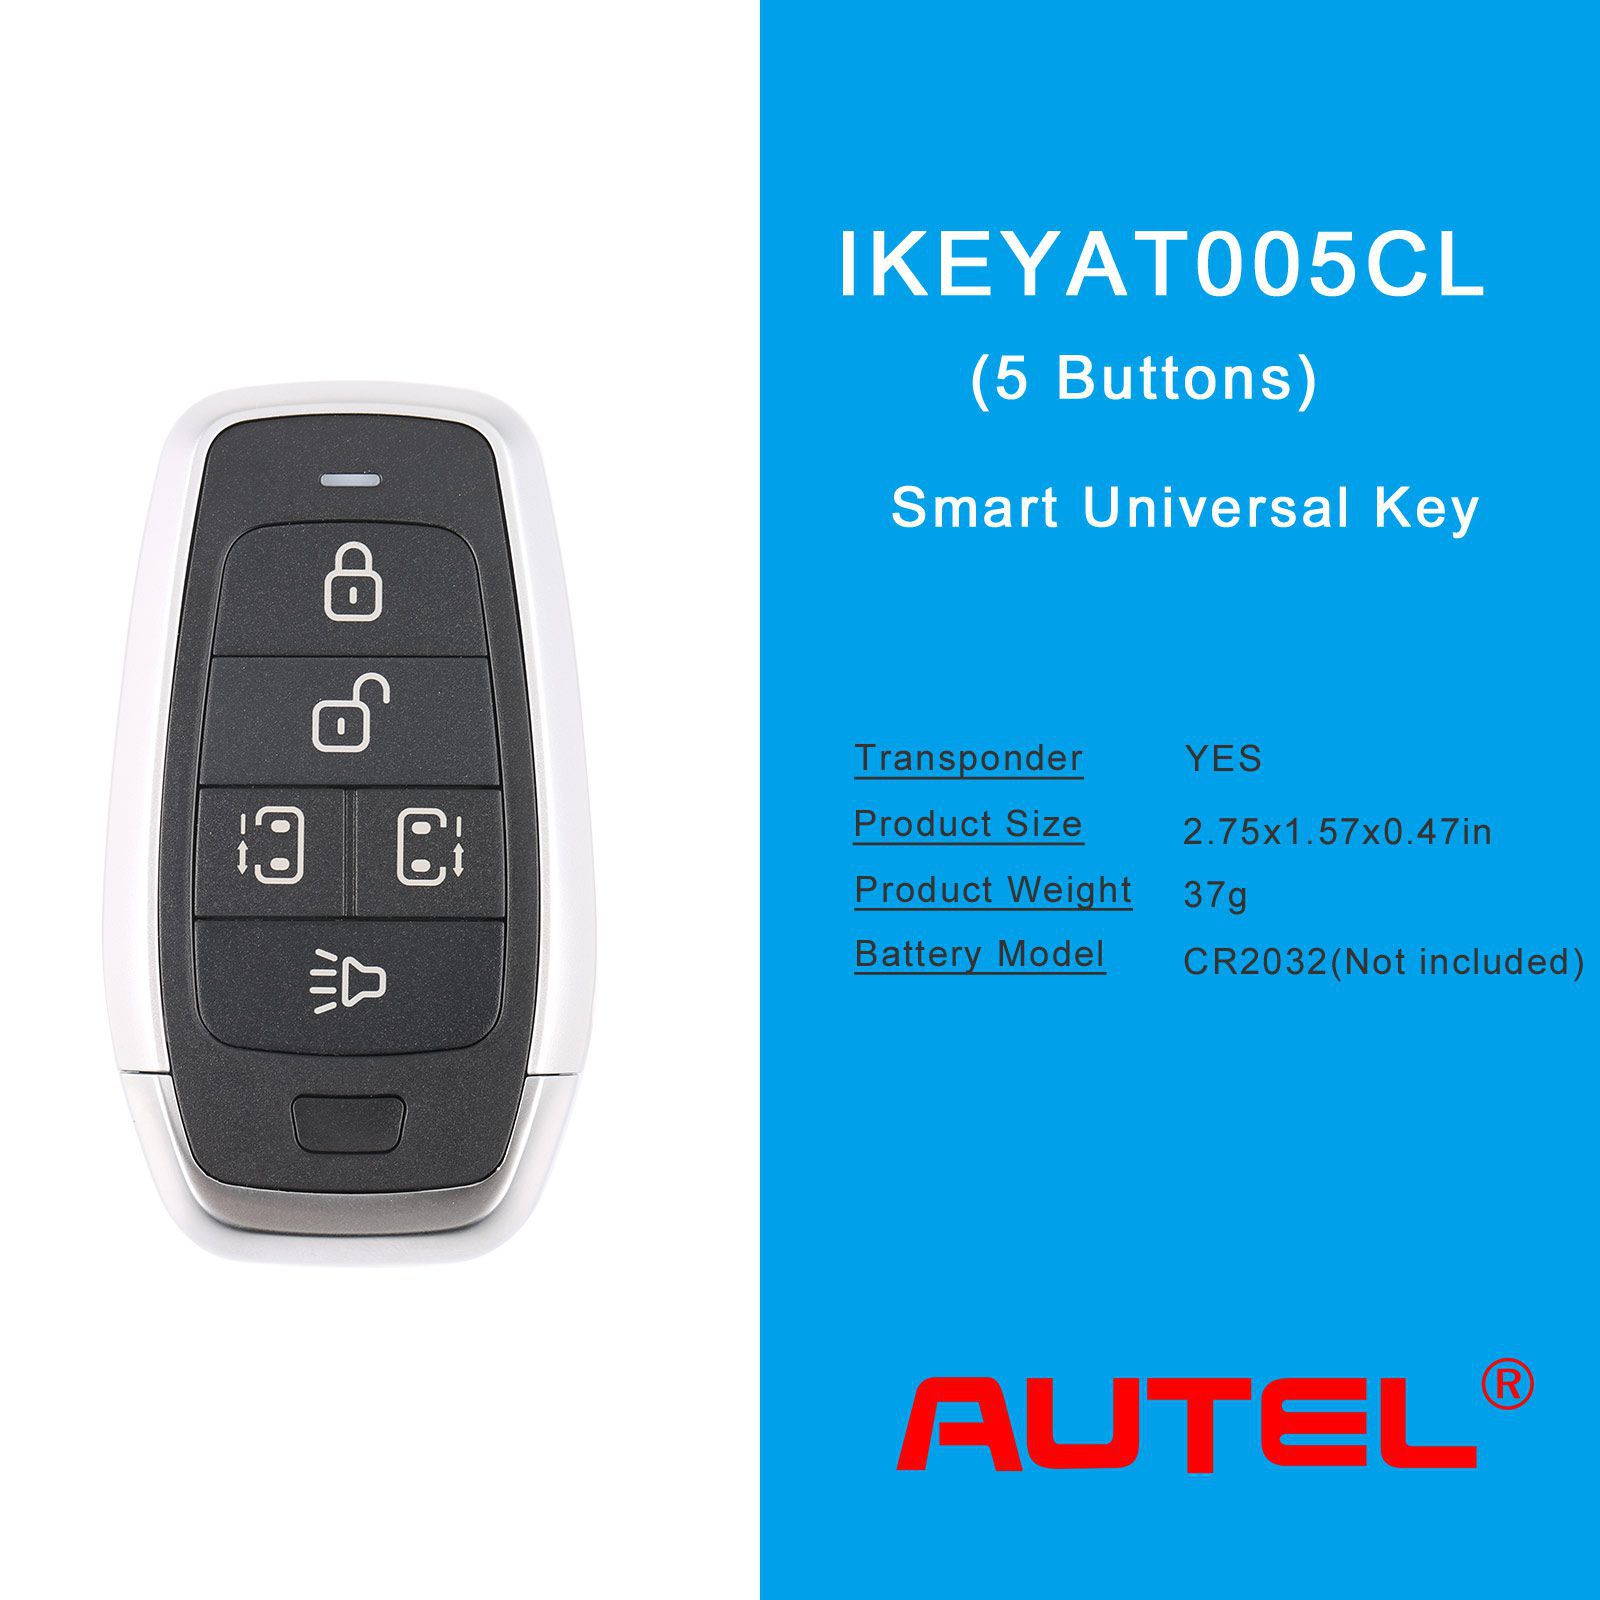 Autel ikeyat005cl 5 boutons clés intelligentes universelles indépendantes 5pcs / lot